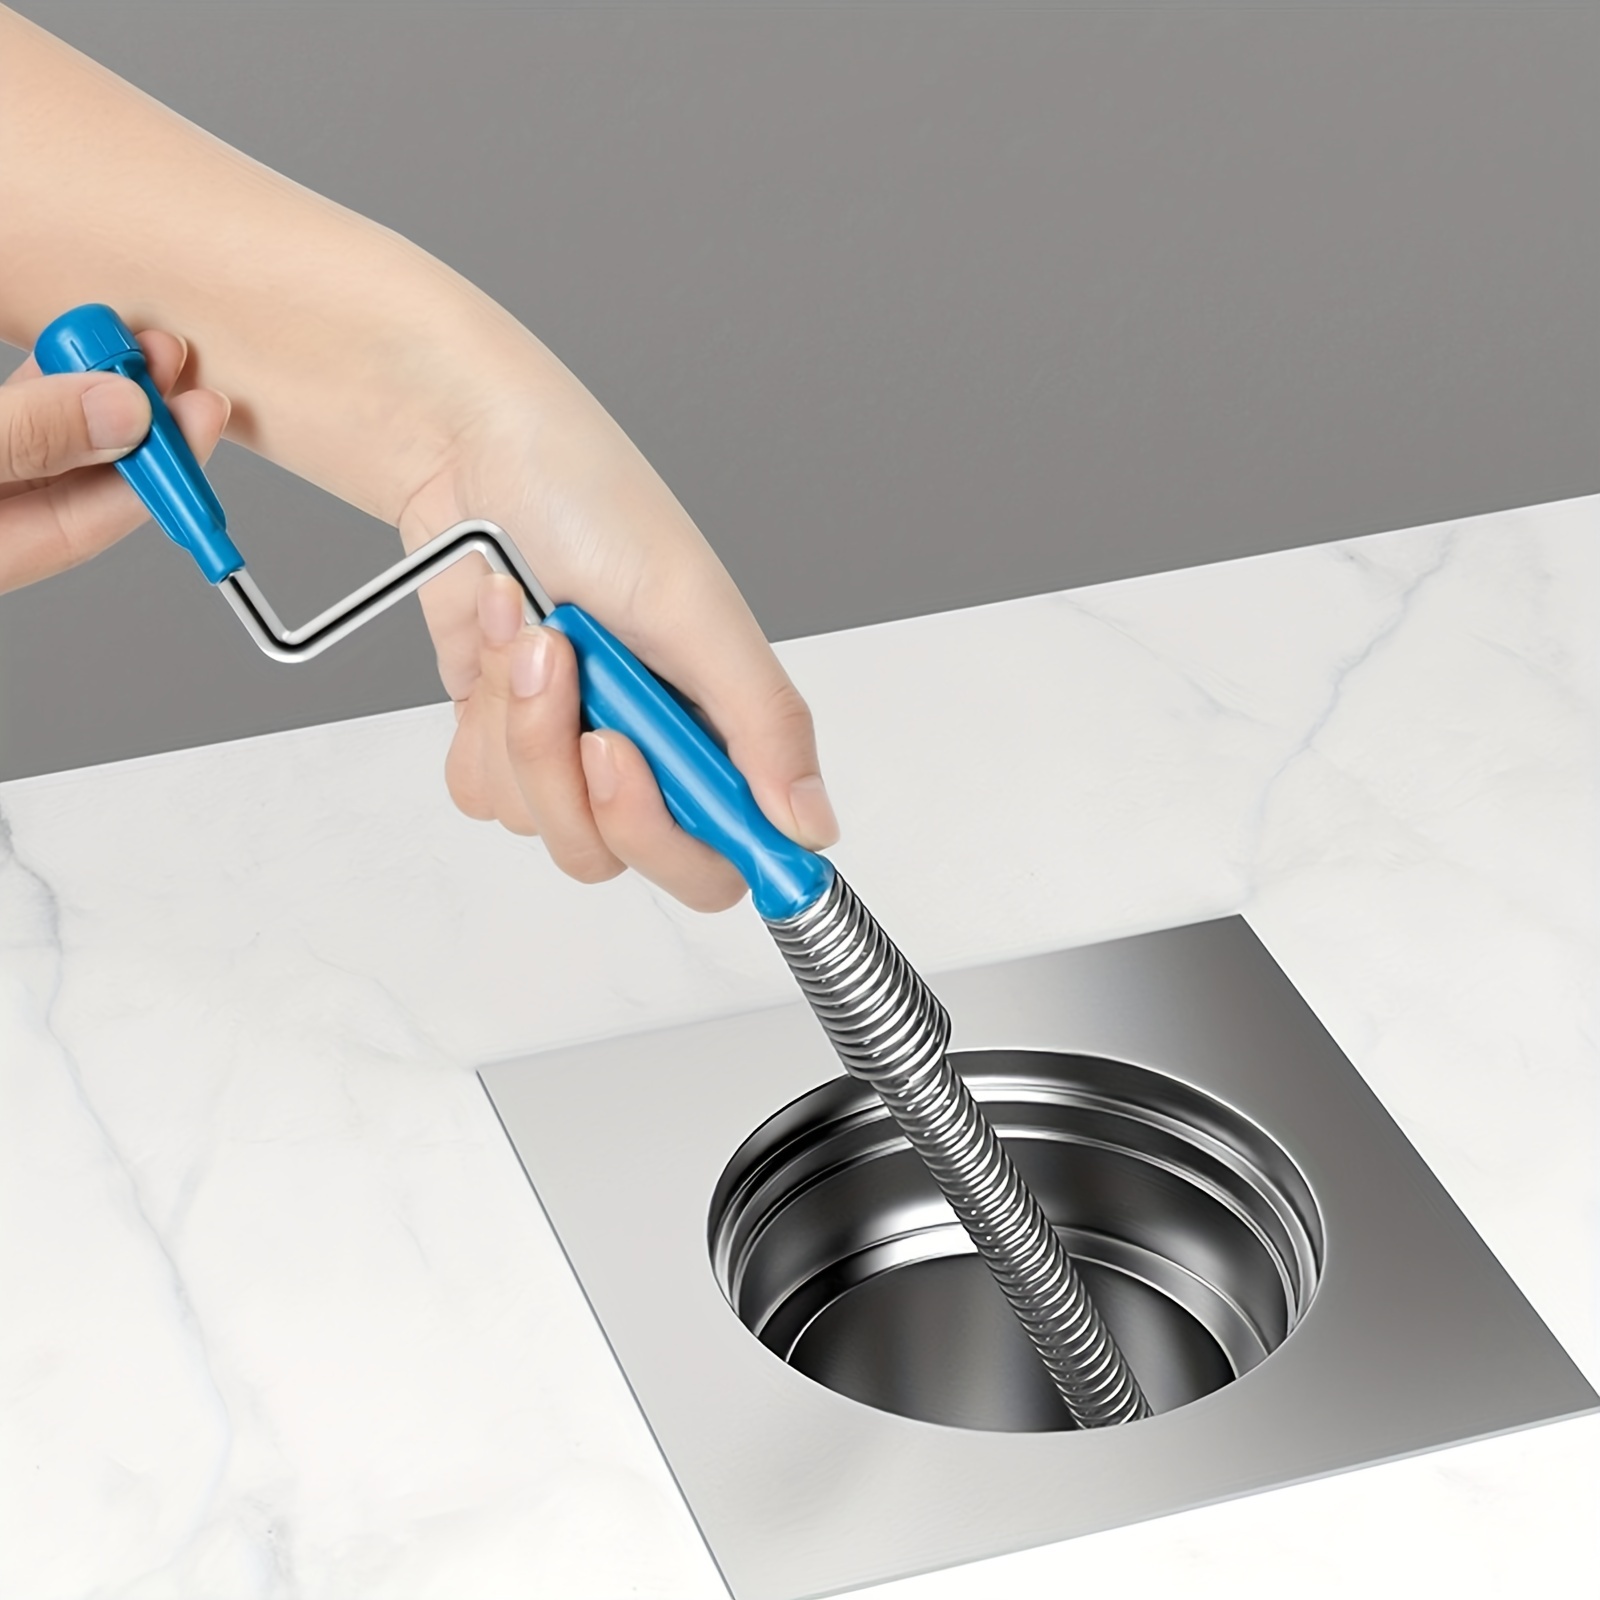 2pcs 2-en-1 limpiador cepillo de fregar juntas profundas de azulejos -  cerdas rígidas en ángulo para duchas, bañeras, cocinas - Limpieza doméstica  multisuperficie completa